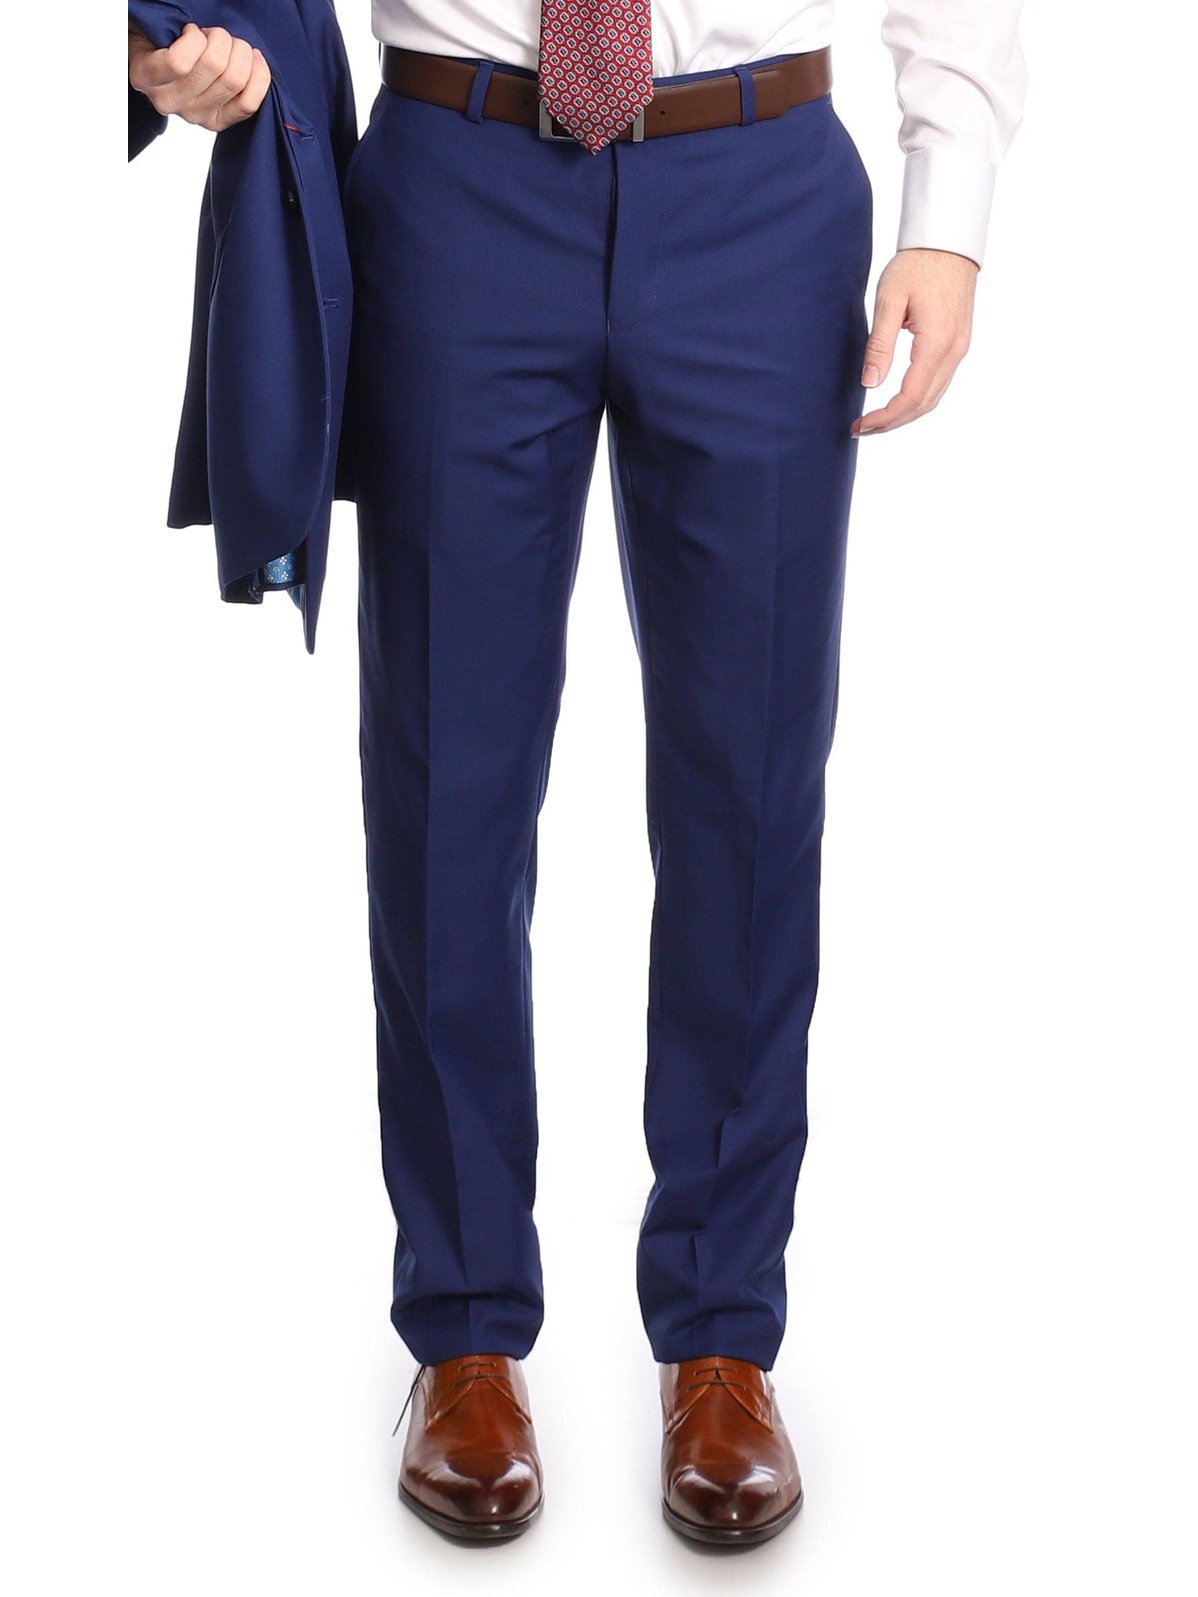 French blue flat front men's suit pants